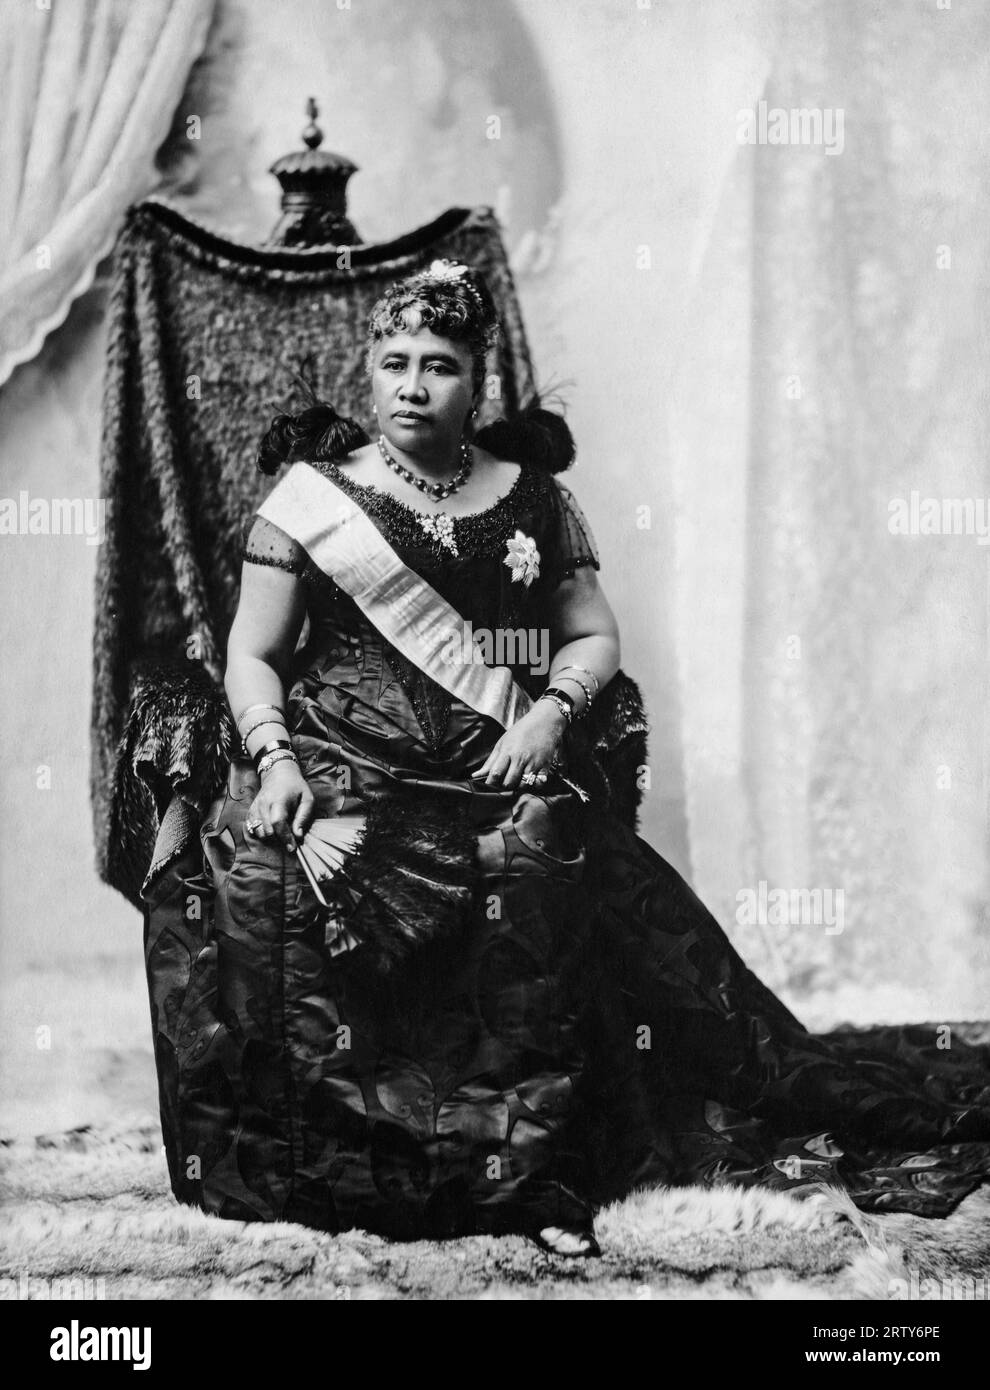 Honolulu, Hawaï 1891 Un portrait de Liliuokalani, la dernière souveraine de la dynastie Kamehameha qui régnait sur le royaume hawaïen, assise sur son trône. Banque D'Images